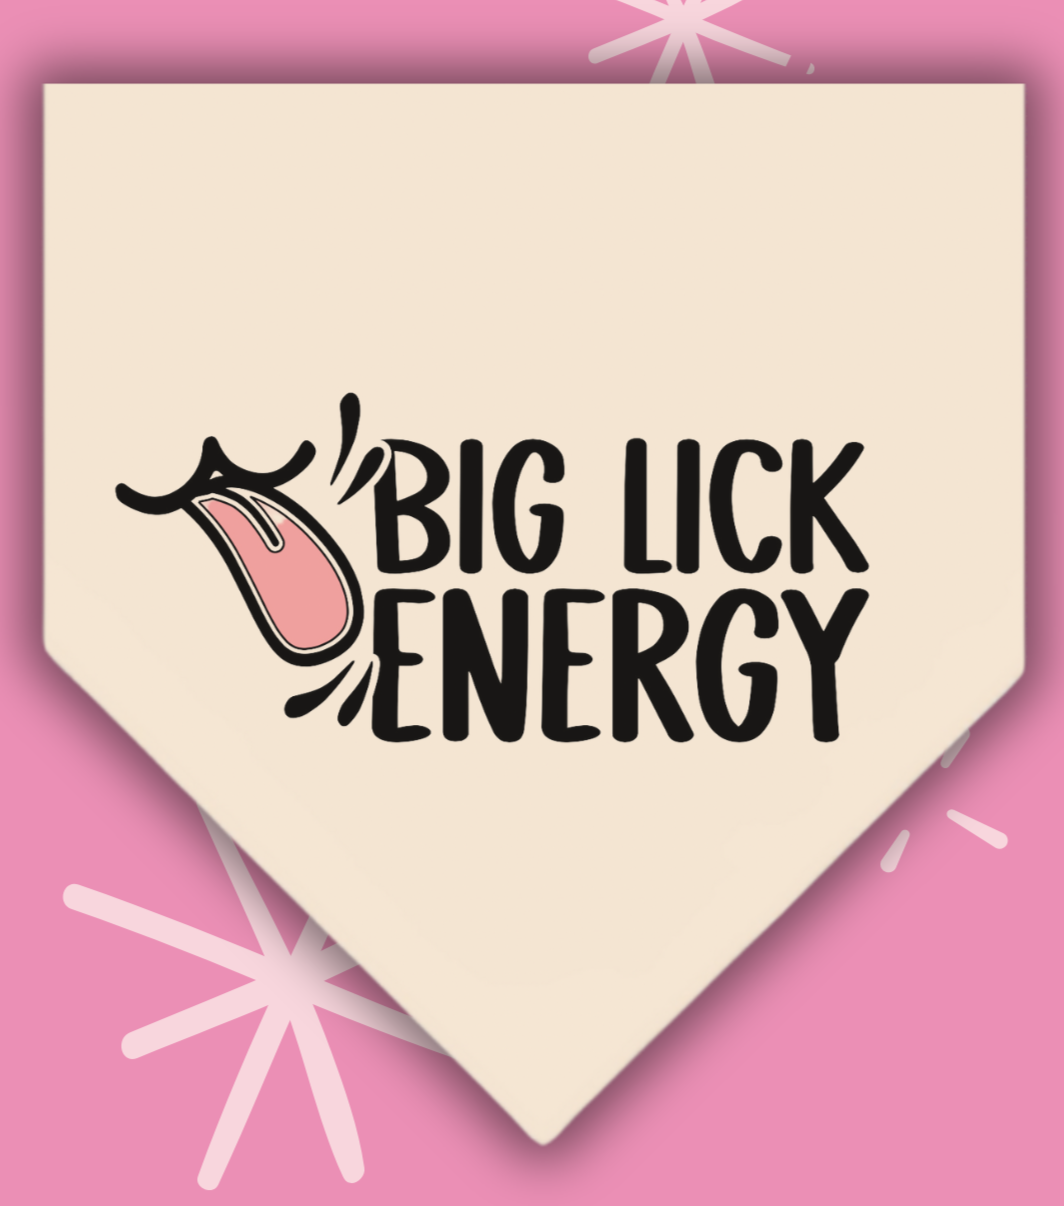 Big Lick Energy